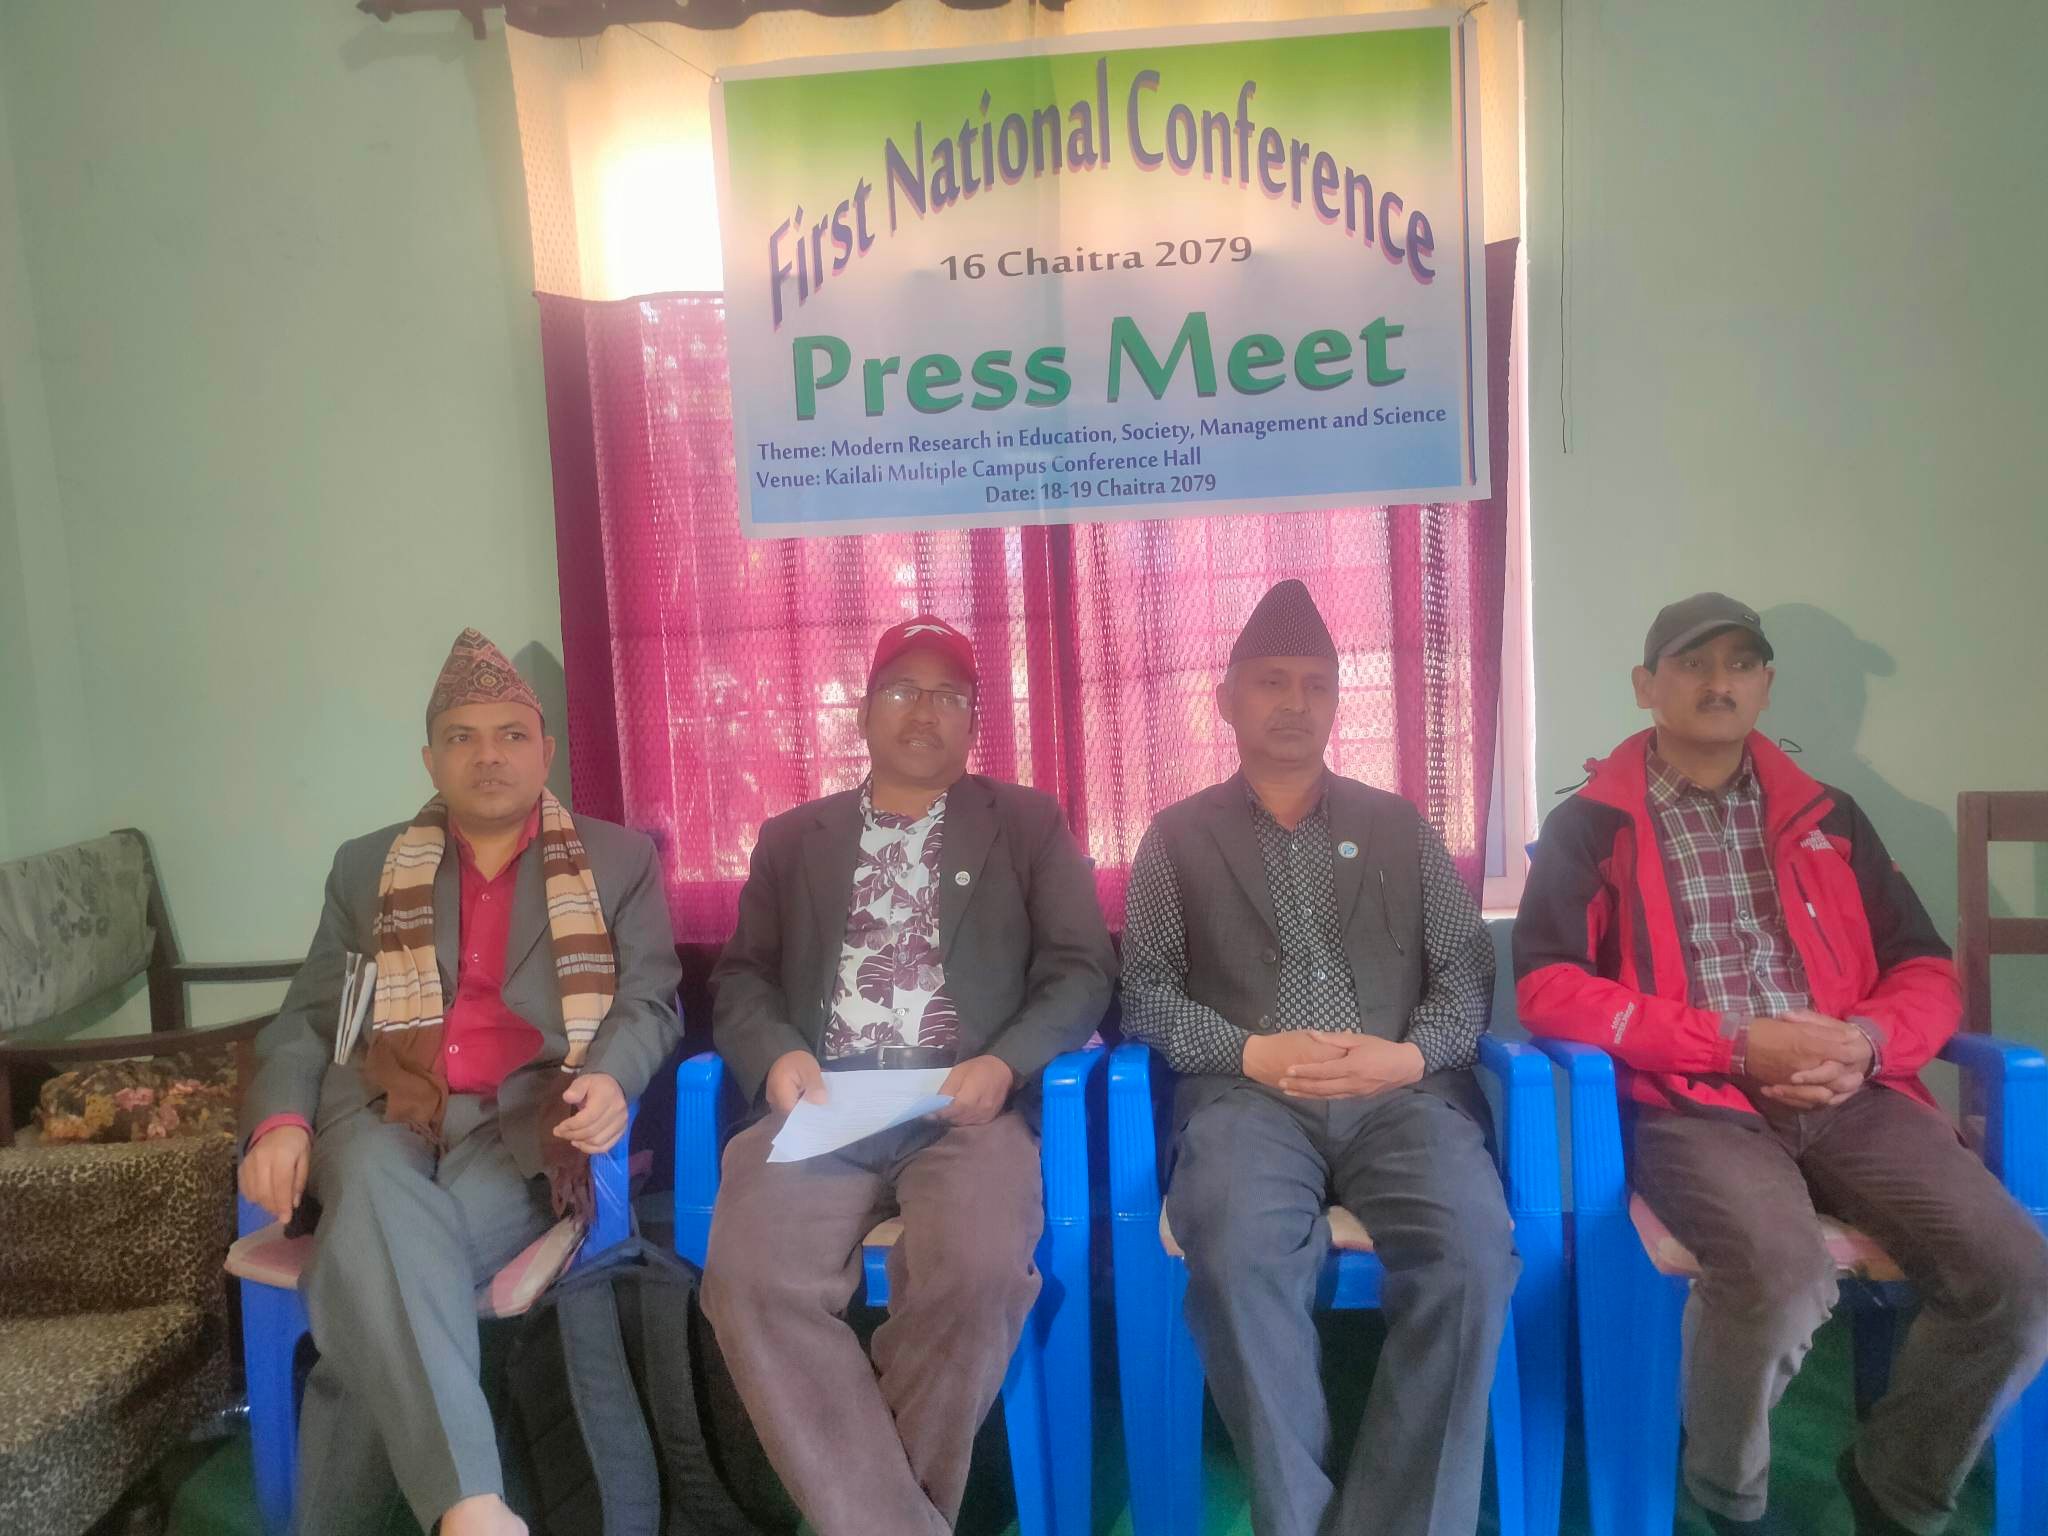 कैलाली बहुमुखी क्याम्पसले धनगढीमा प्राज्ञिक राष्ट्रिय सम्मेलन गर्दै